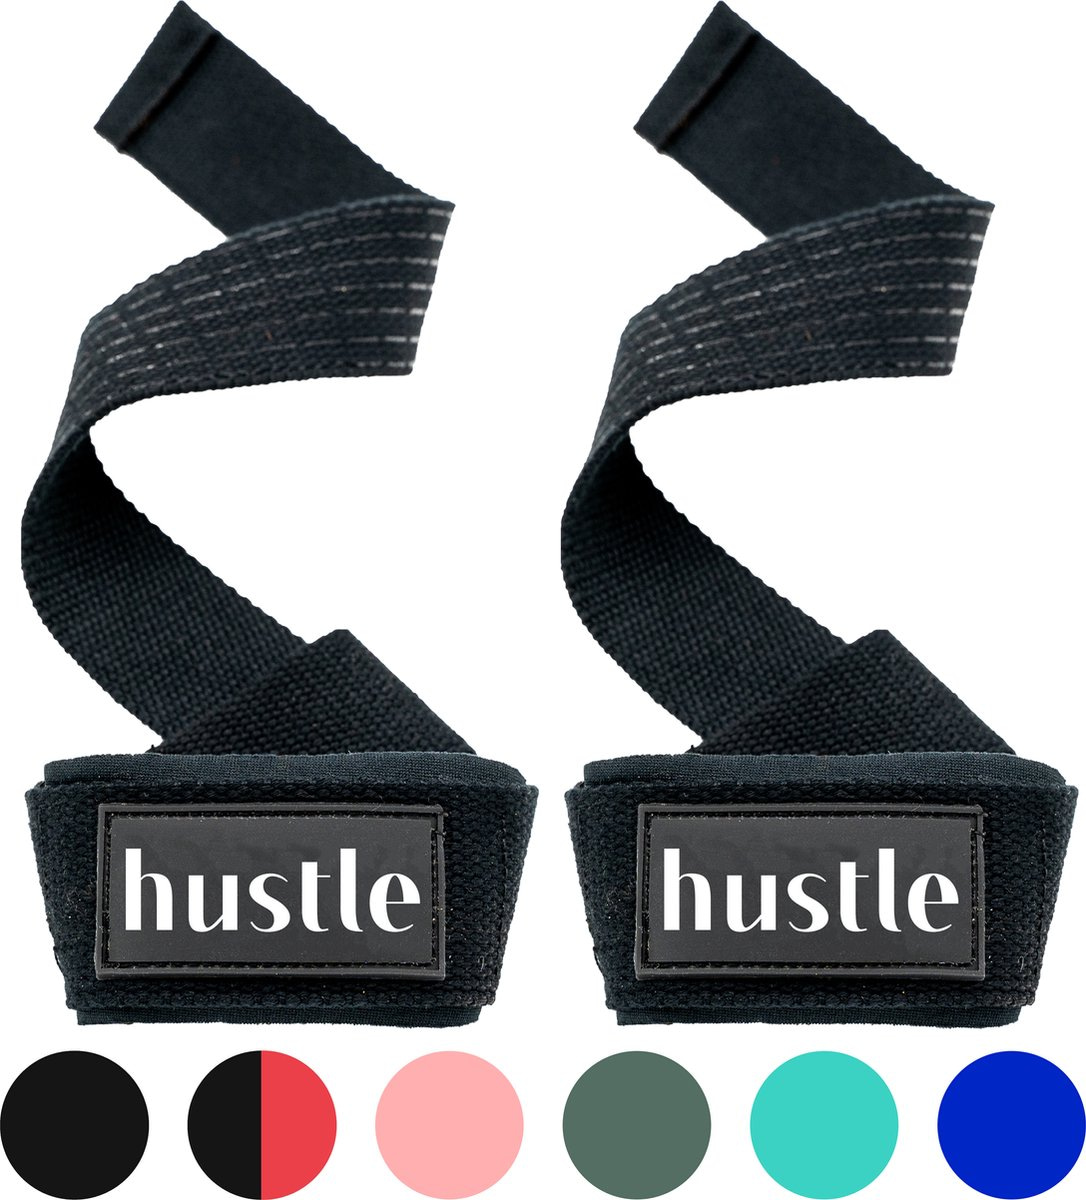 hustle – Zwarte Lifting Straps. In meerdere kleuren verkrijgbaar